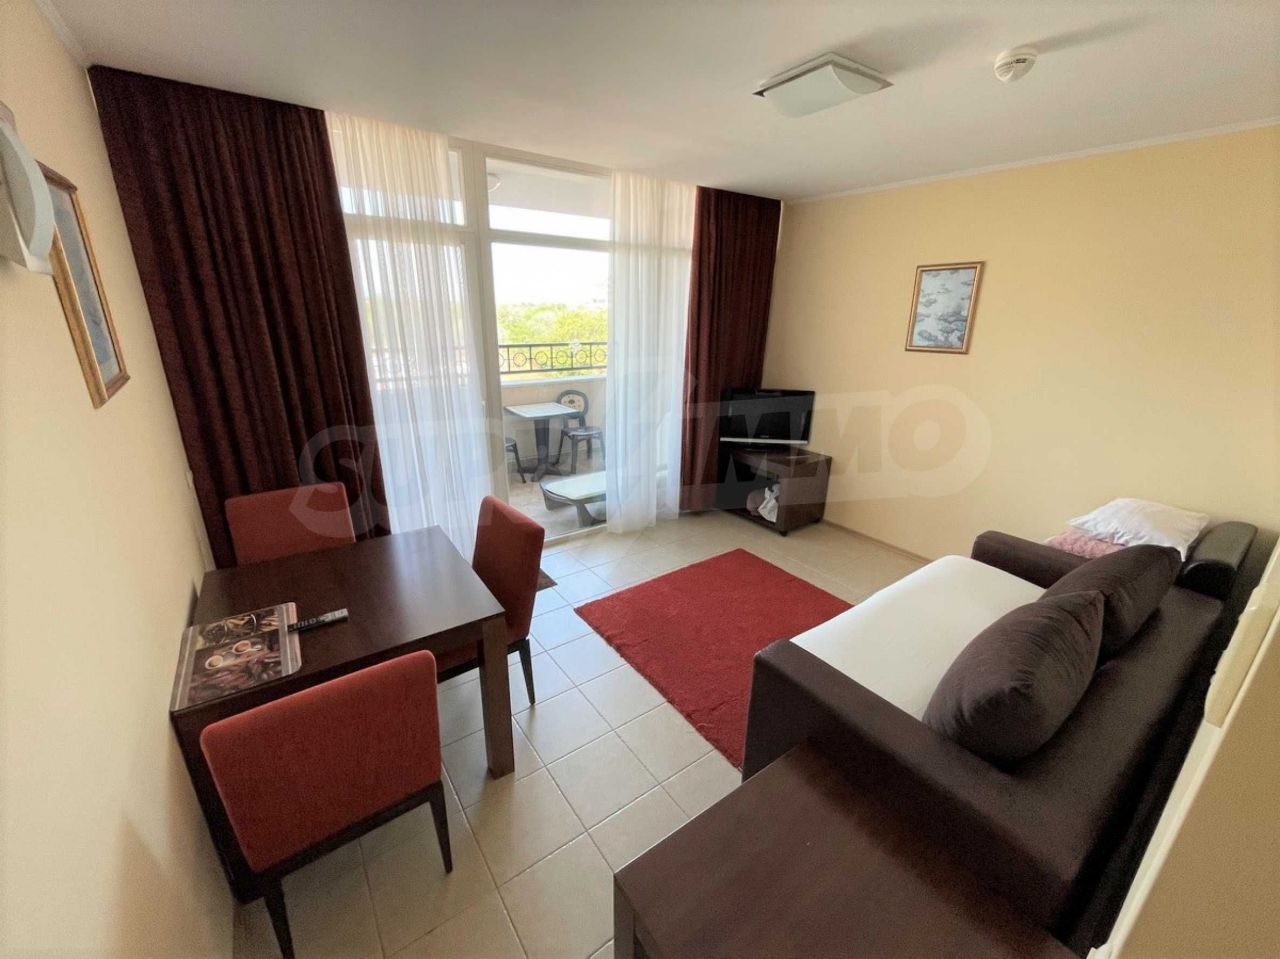 Apartment in Pomorie, Bulgaria, 65 sq.m - picture 1